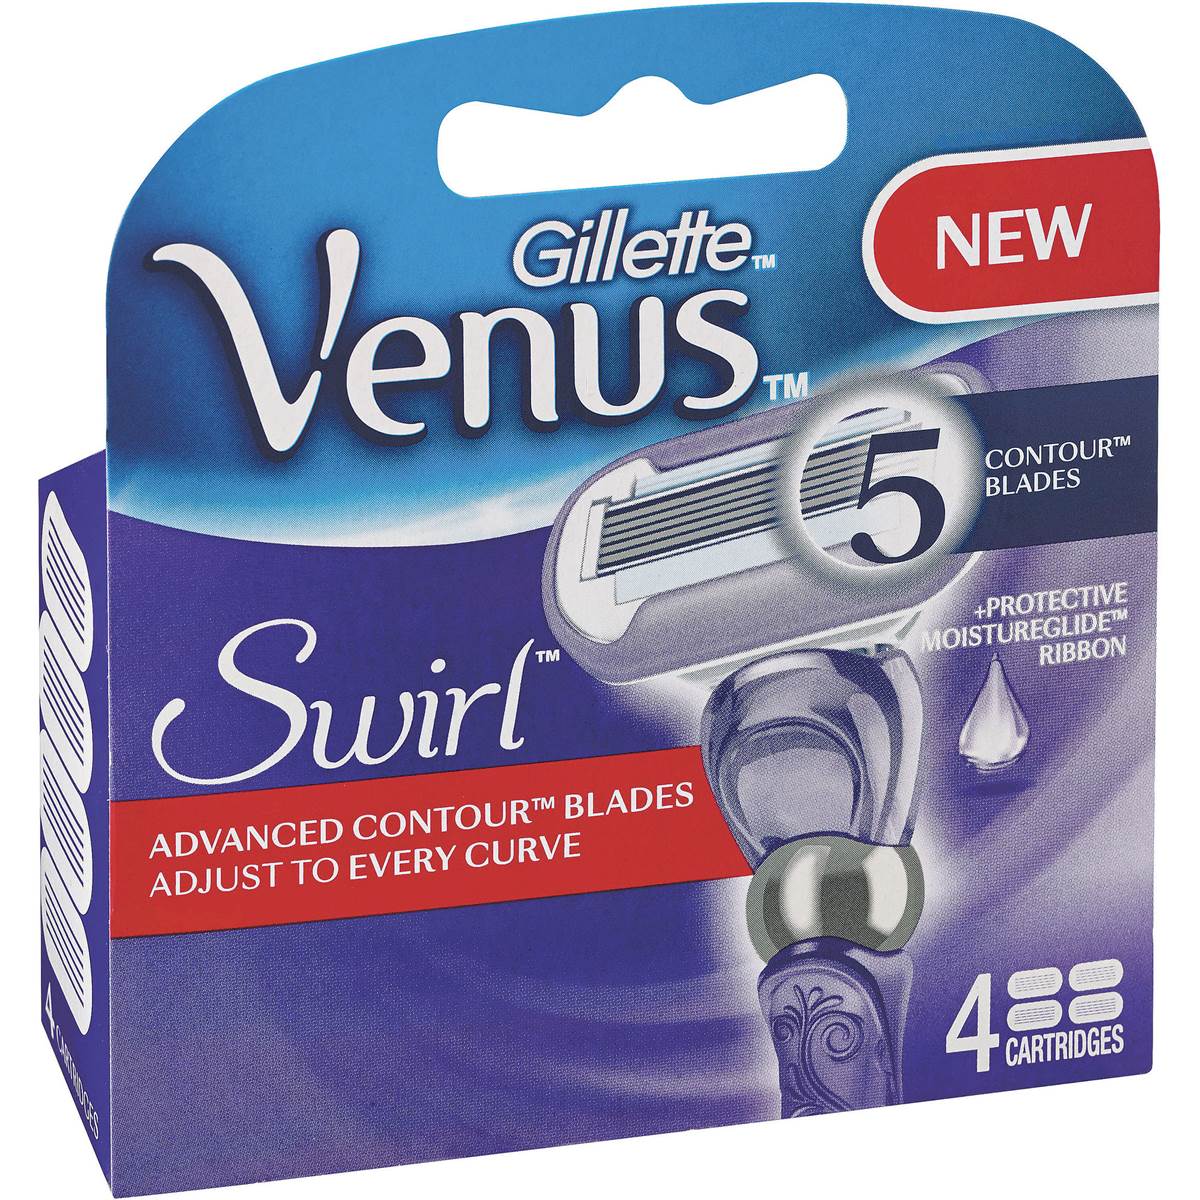 Gillette Venus Shaving Blade Refill Swirl